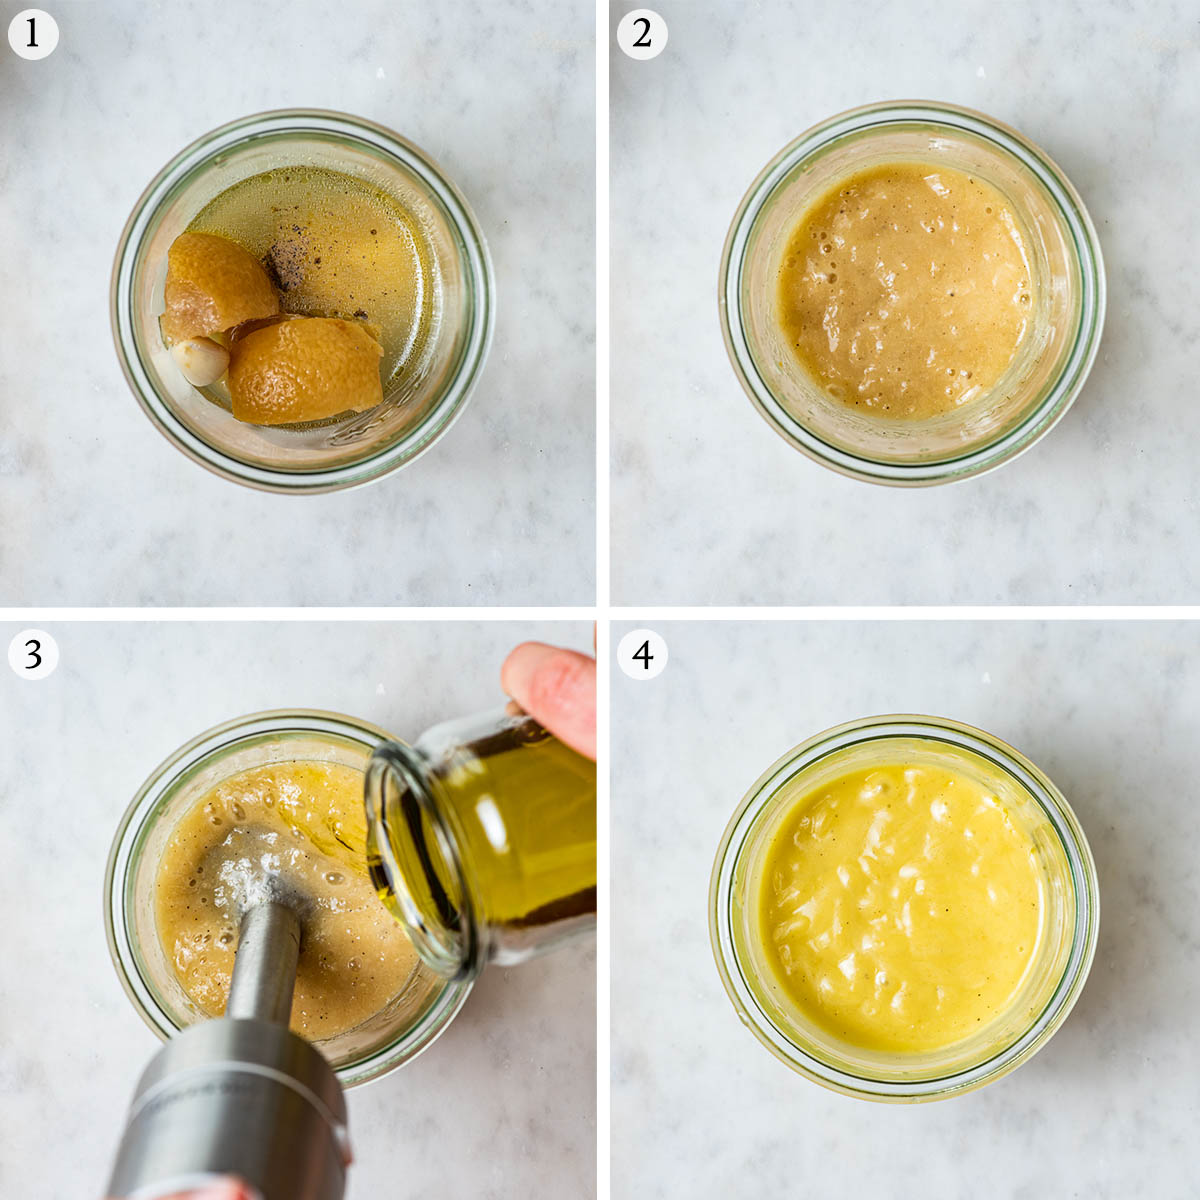 Lemon vinaigrette steps 1 to 4, blending with immersion blender.